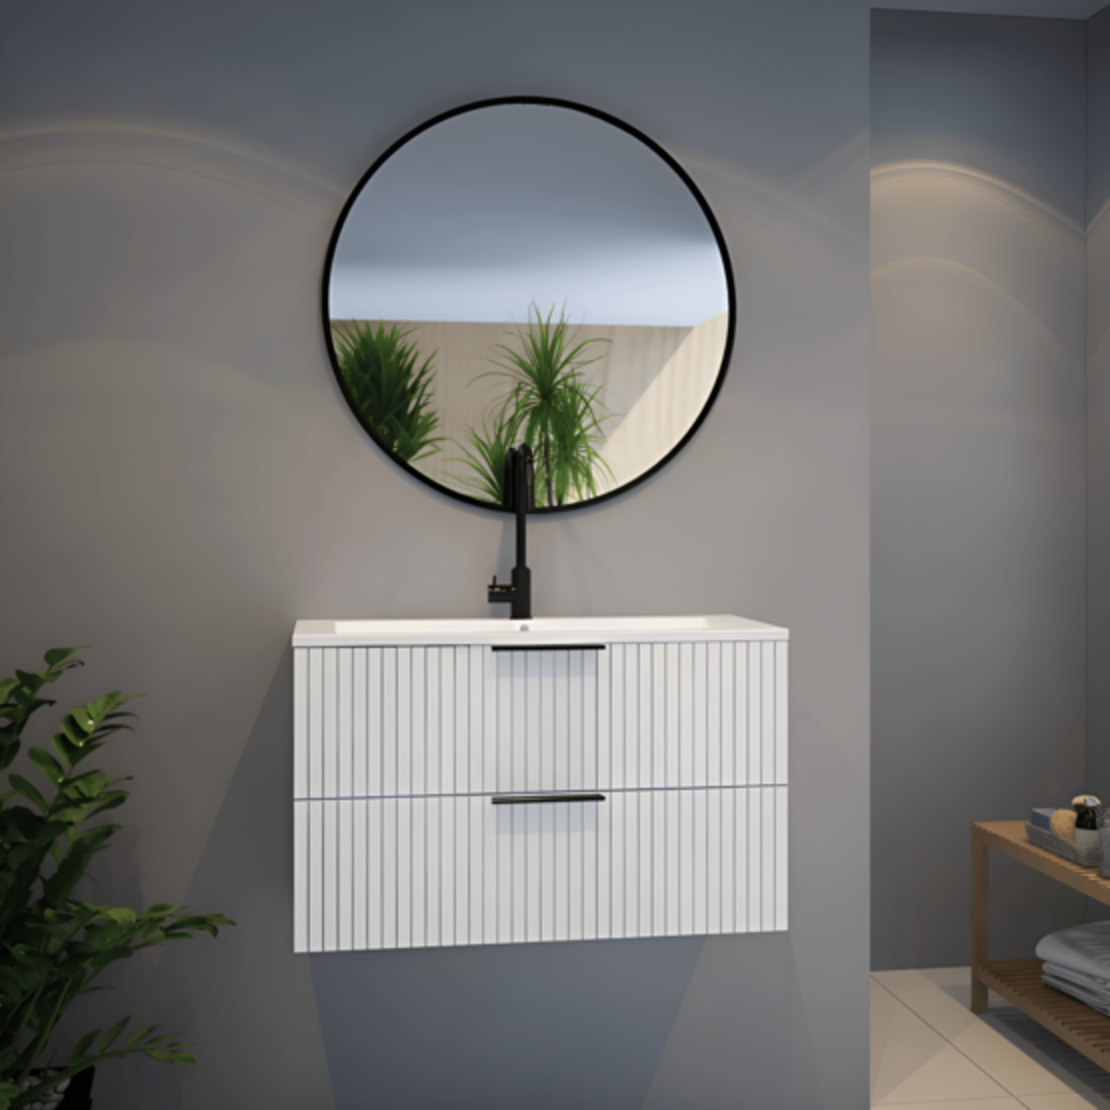 ארון אמבטיה תלוי דגם אסף לבן כולל מראה עגולה